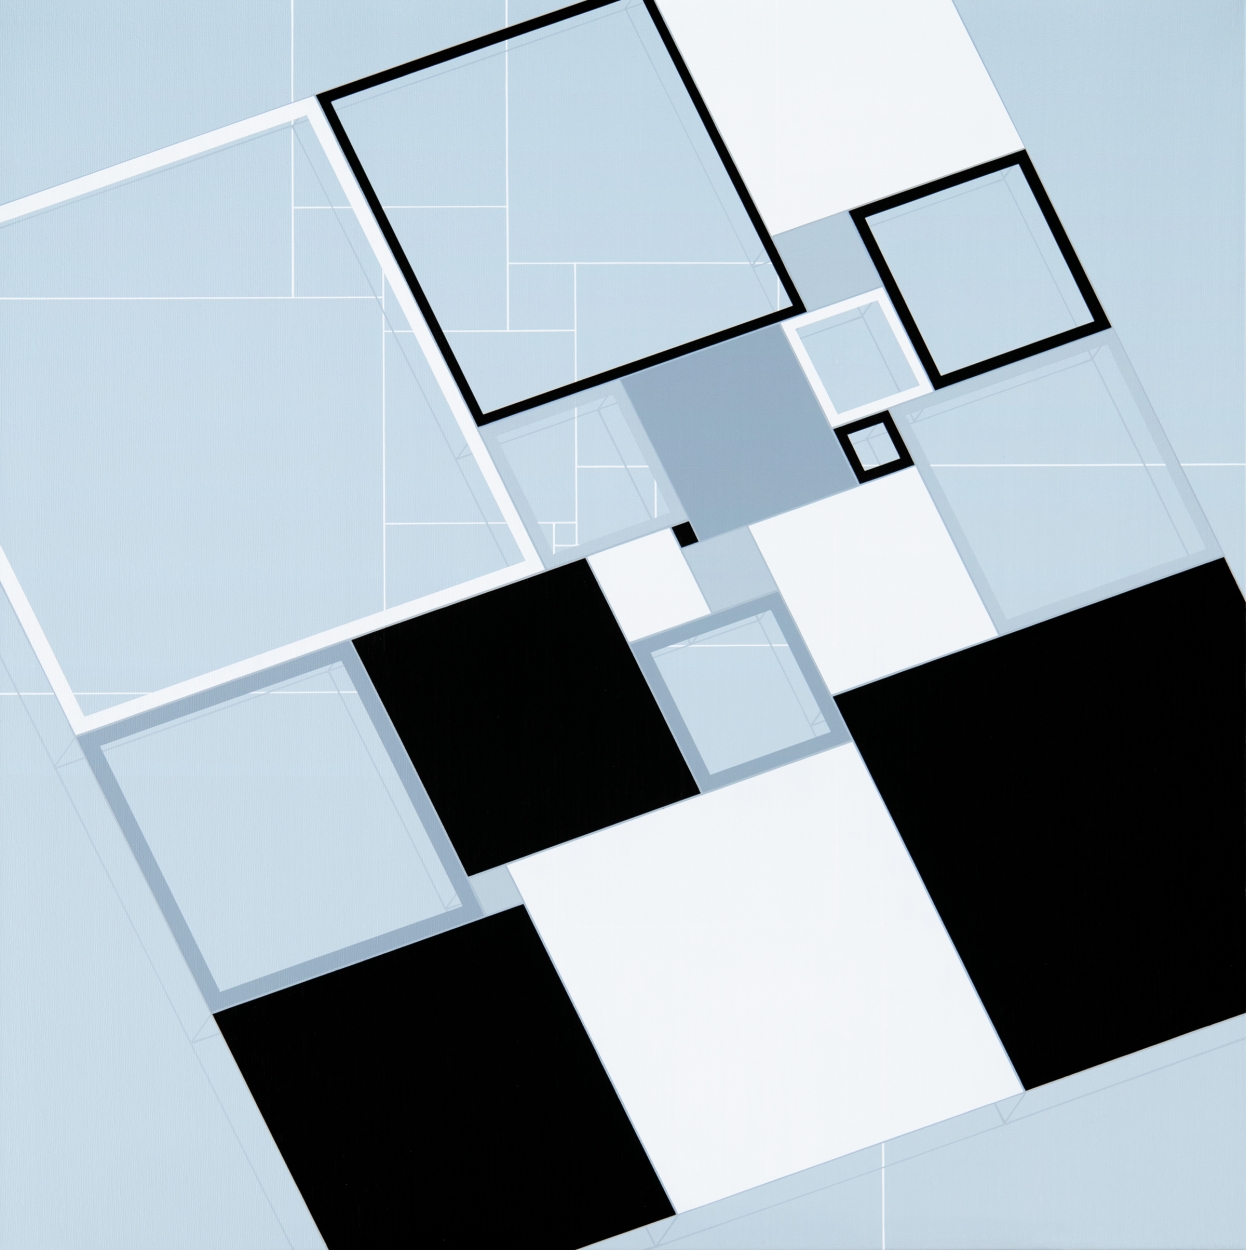  Ottó László: Squares-in-square (Space), 2020